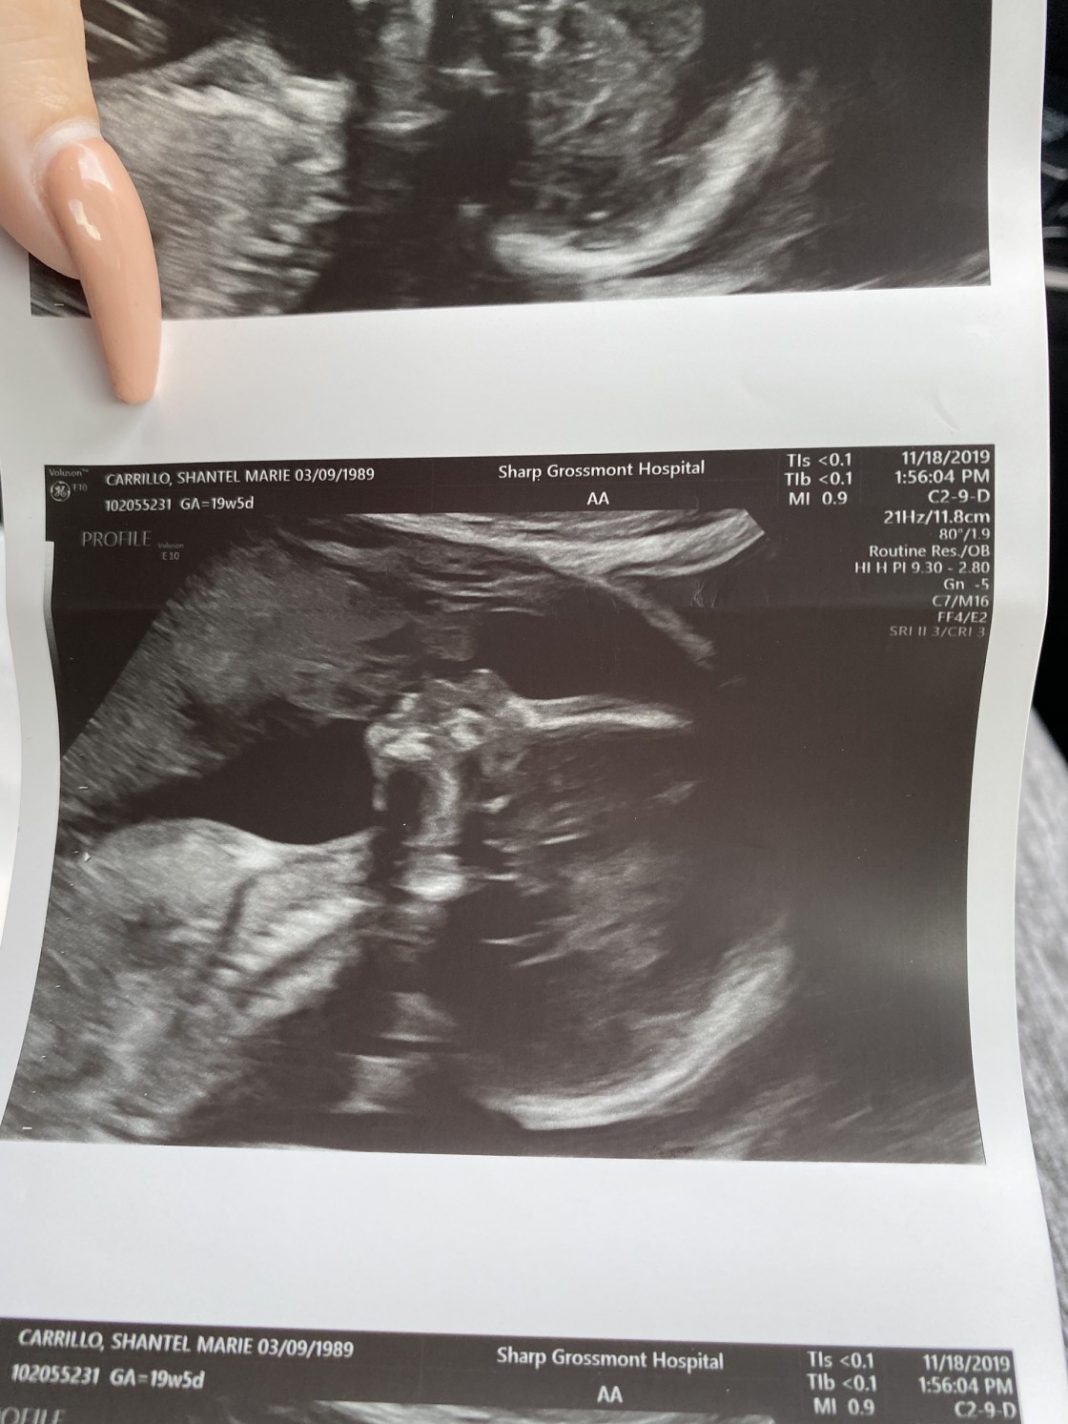 gravida ve pai falecido beijando seu bebe no ultrassom e imagem viraliza - Grávida acredita que pai falecido apareceu beijando seu bebê no ultrassom